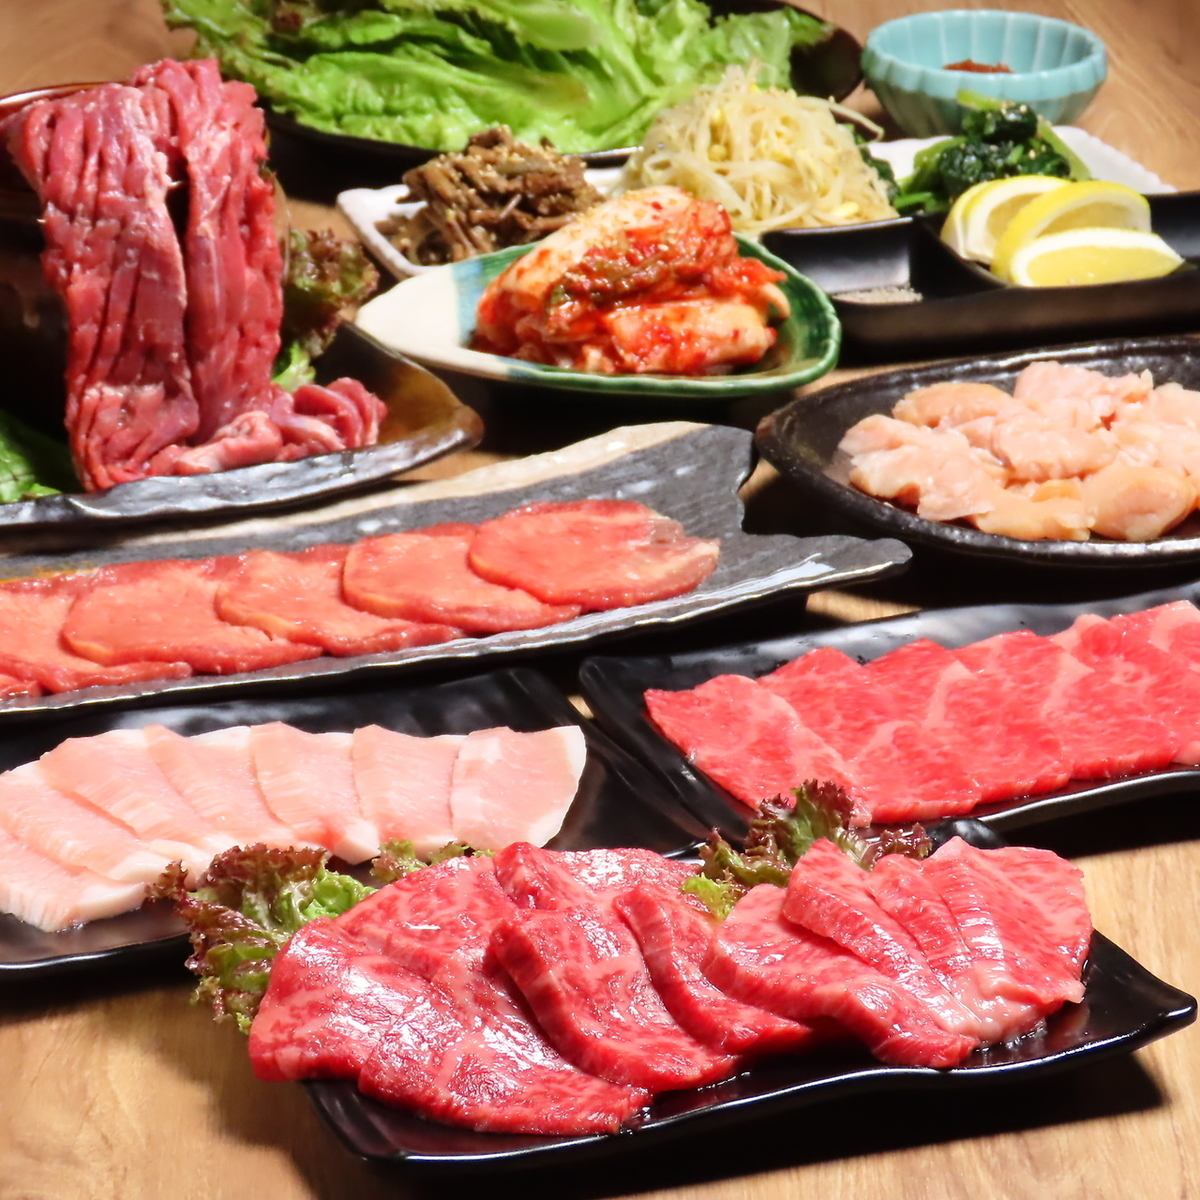 無限暢飲748日元(含稅)起!一起享受便宜又美味的烤肉和日本酒吧!